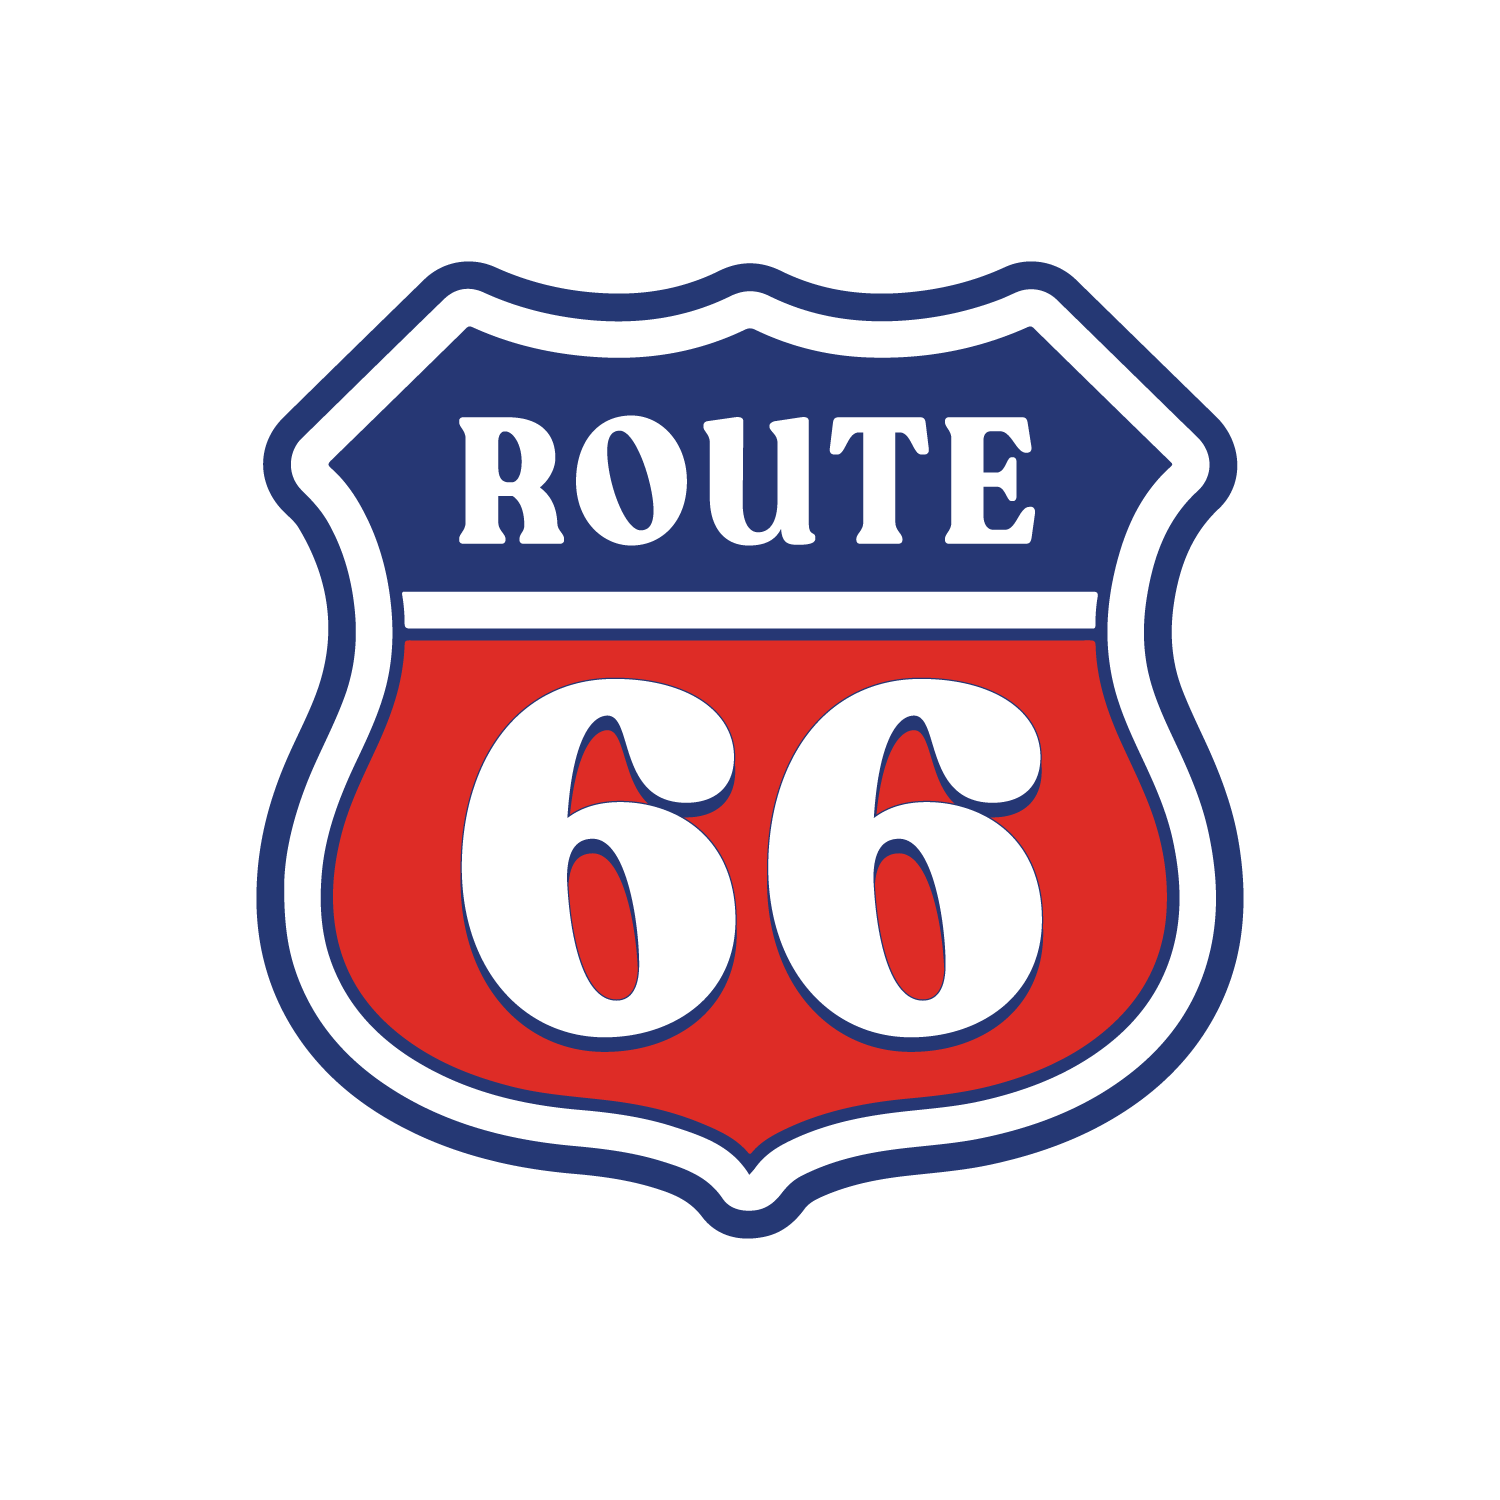 ルート66 レッド (Route-66-Mr Clean)